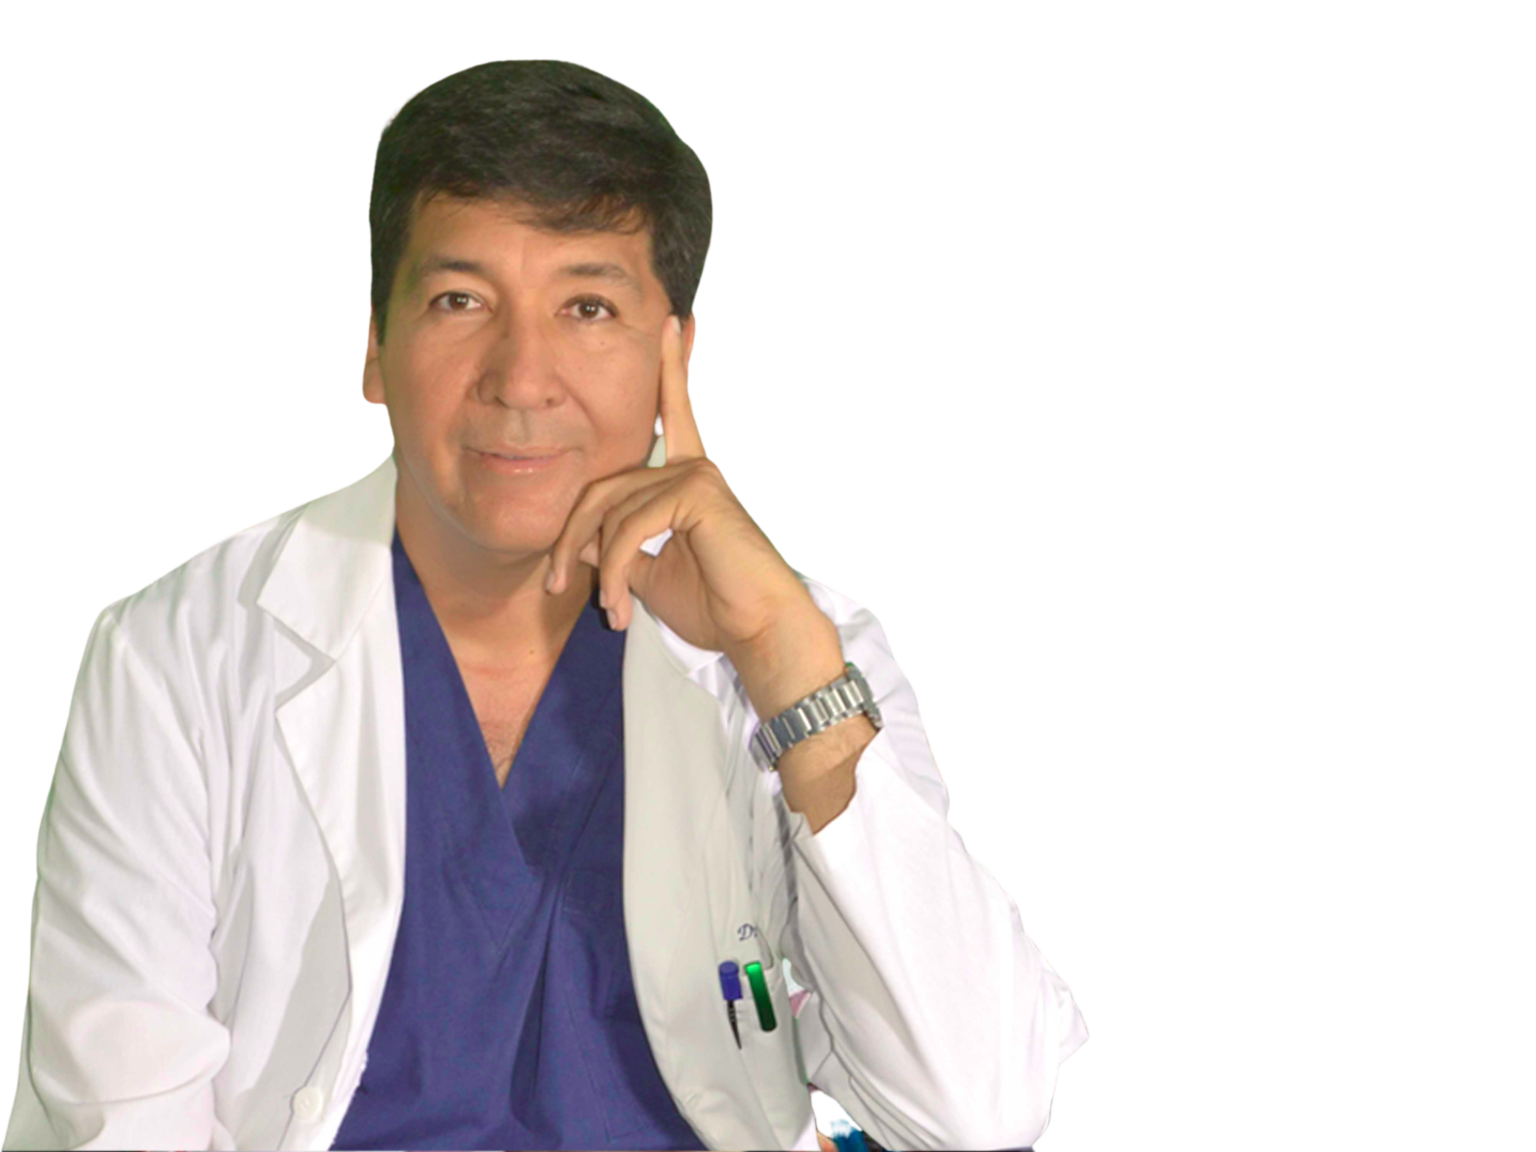 Dr. Mateo Noblecilla